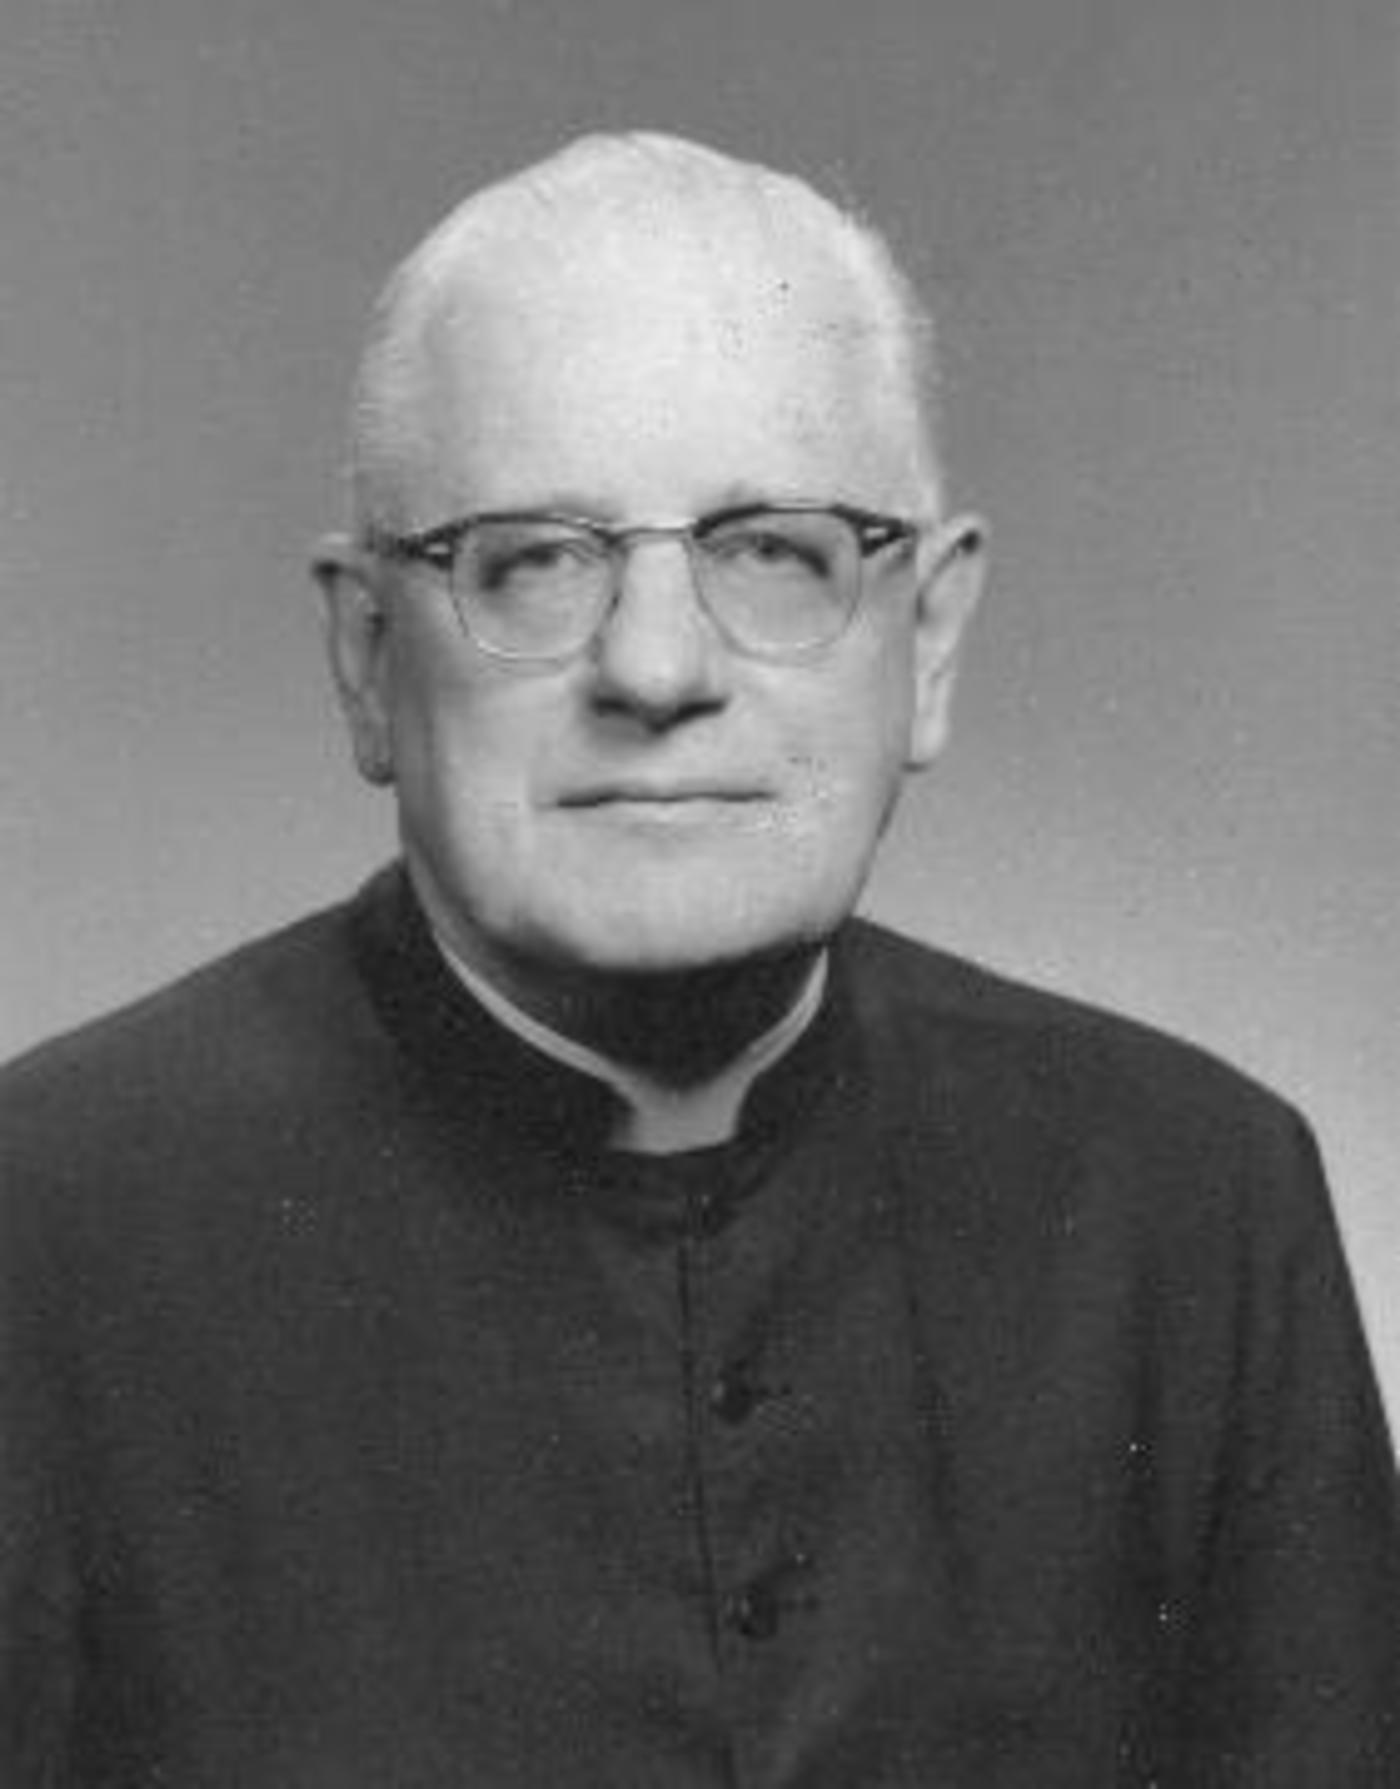 The Rev. William P. Vaskas